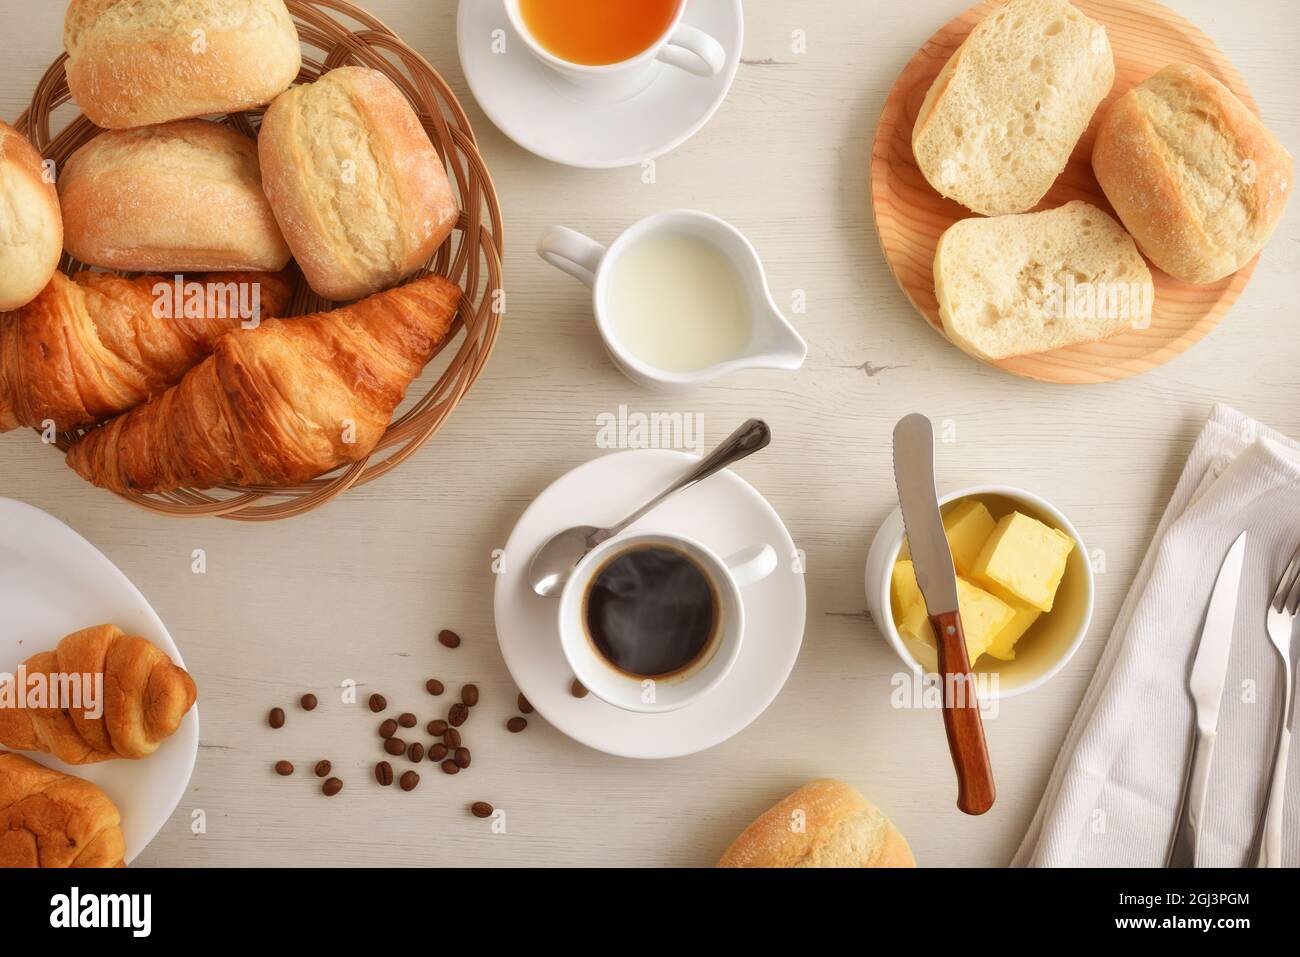 Café du matin sur une table en bois blanc avec une assiette avec deux croissants et du pain sur fond blanc isolé. Vue avant. Composition horizontale. Banque D'Images